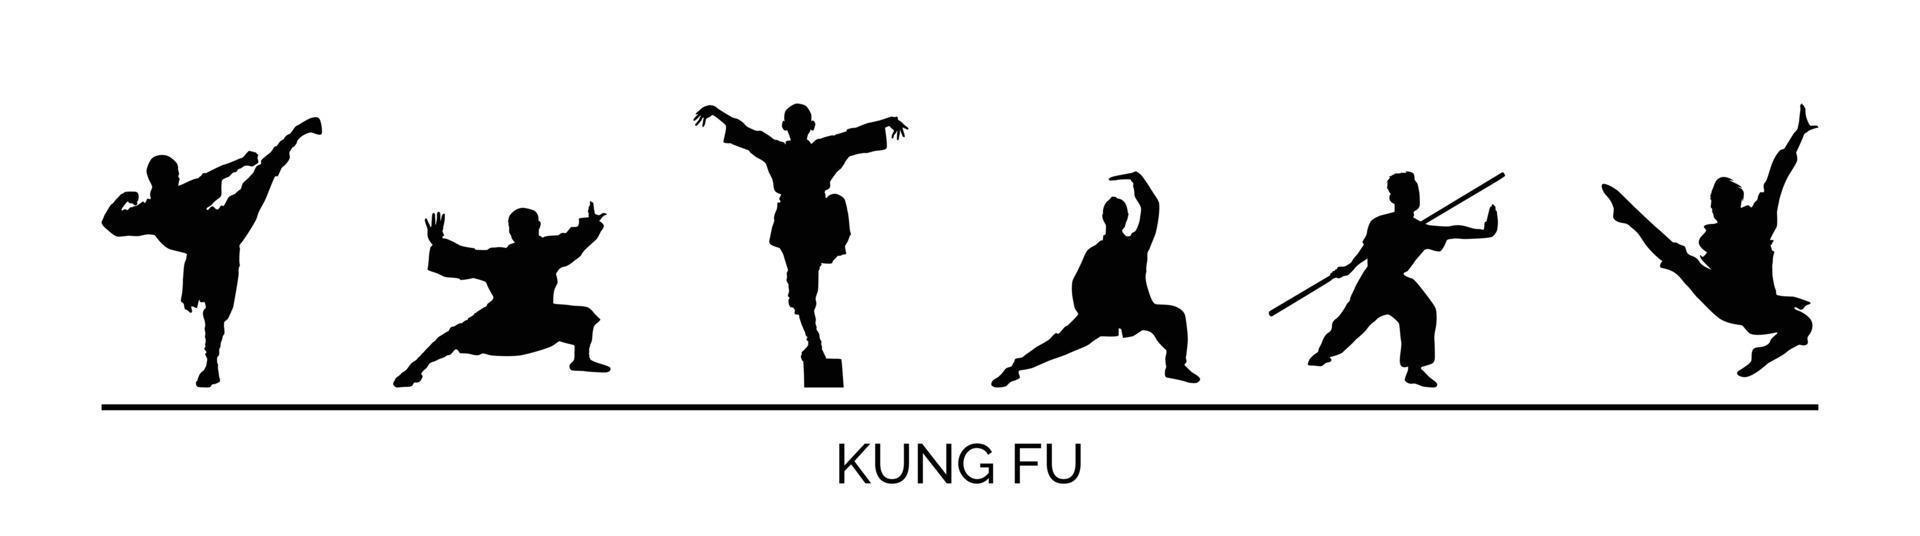 marcial artes kung fu silhueta pacote. diferente estilo do kung fu vetor